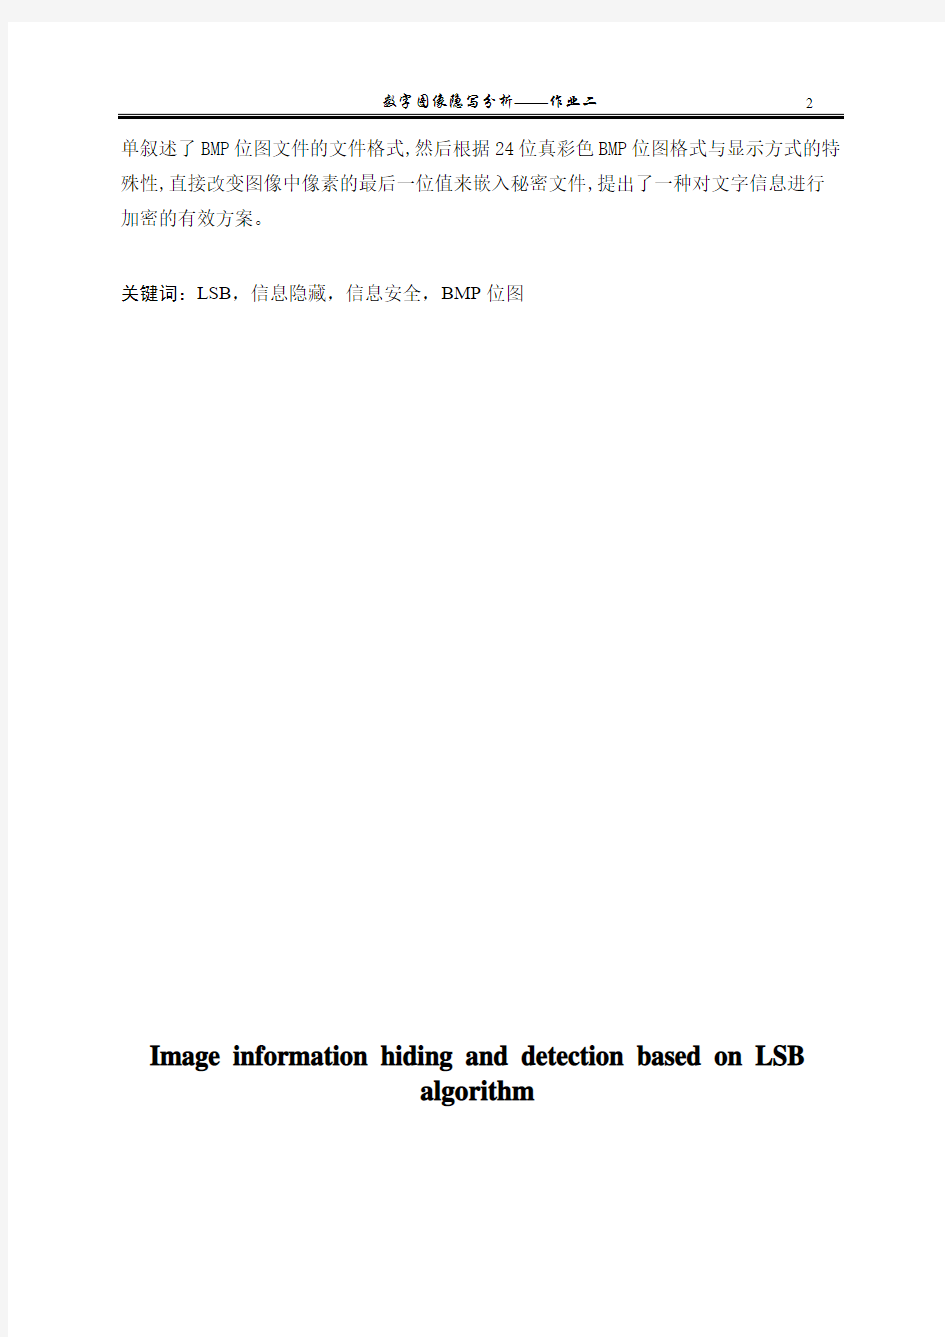 基于LSB算法的图像信息隐藏与检测